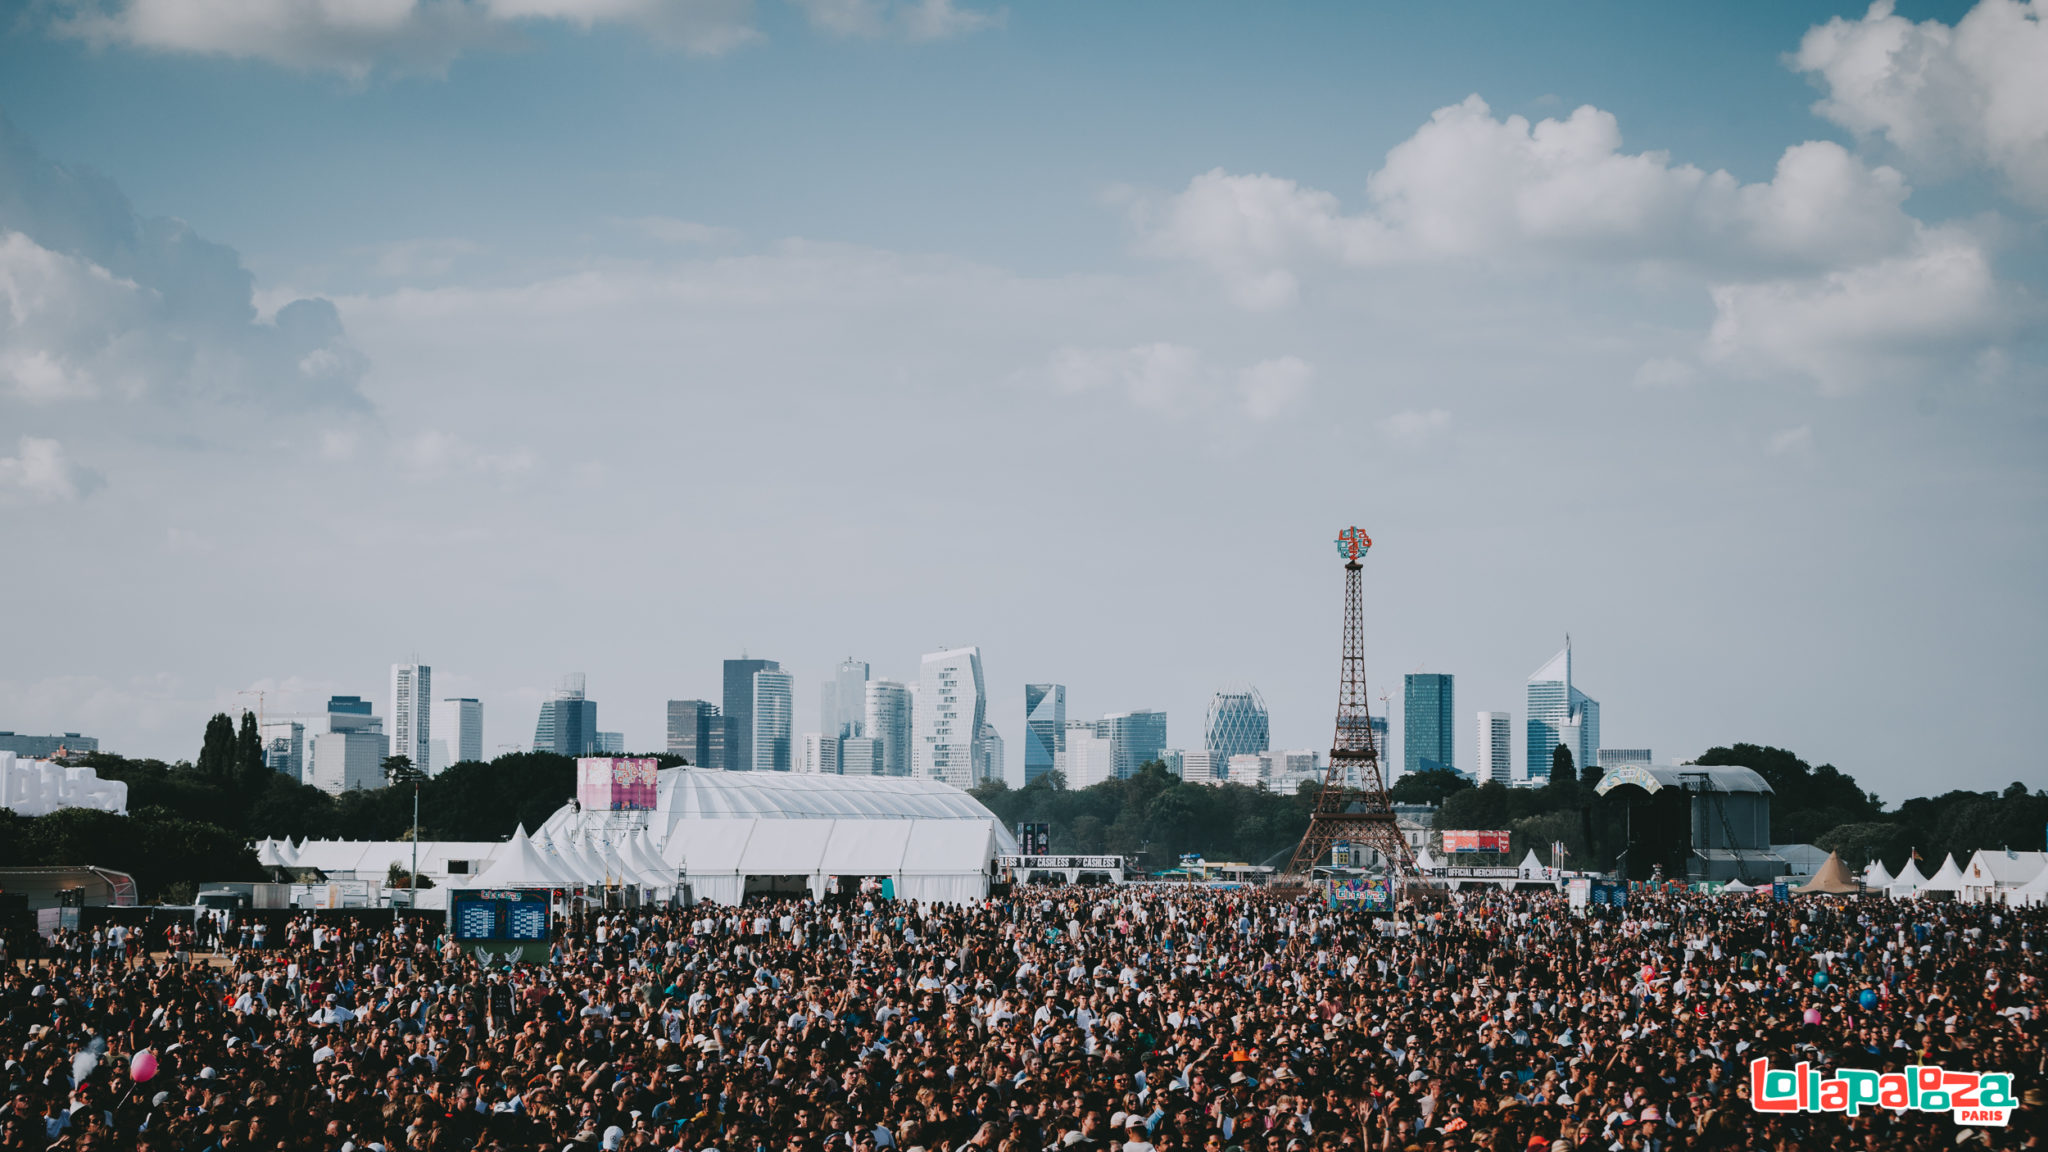 Lollapalooza Paris 2019 annonce